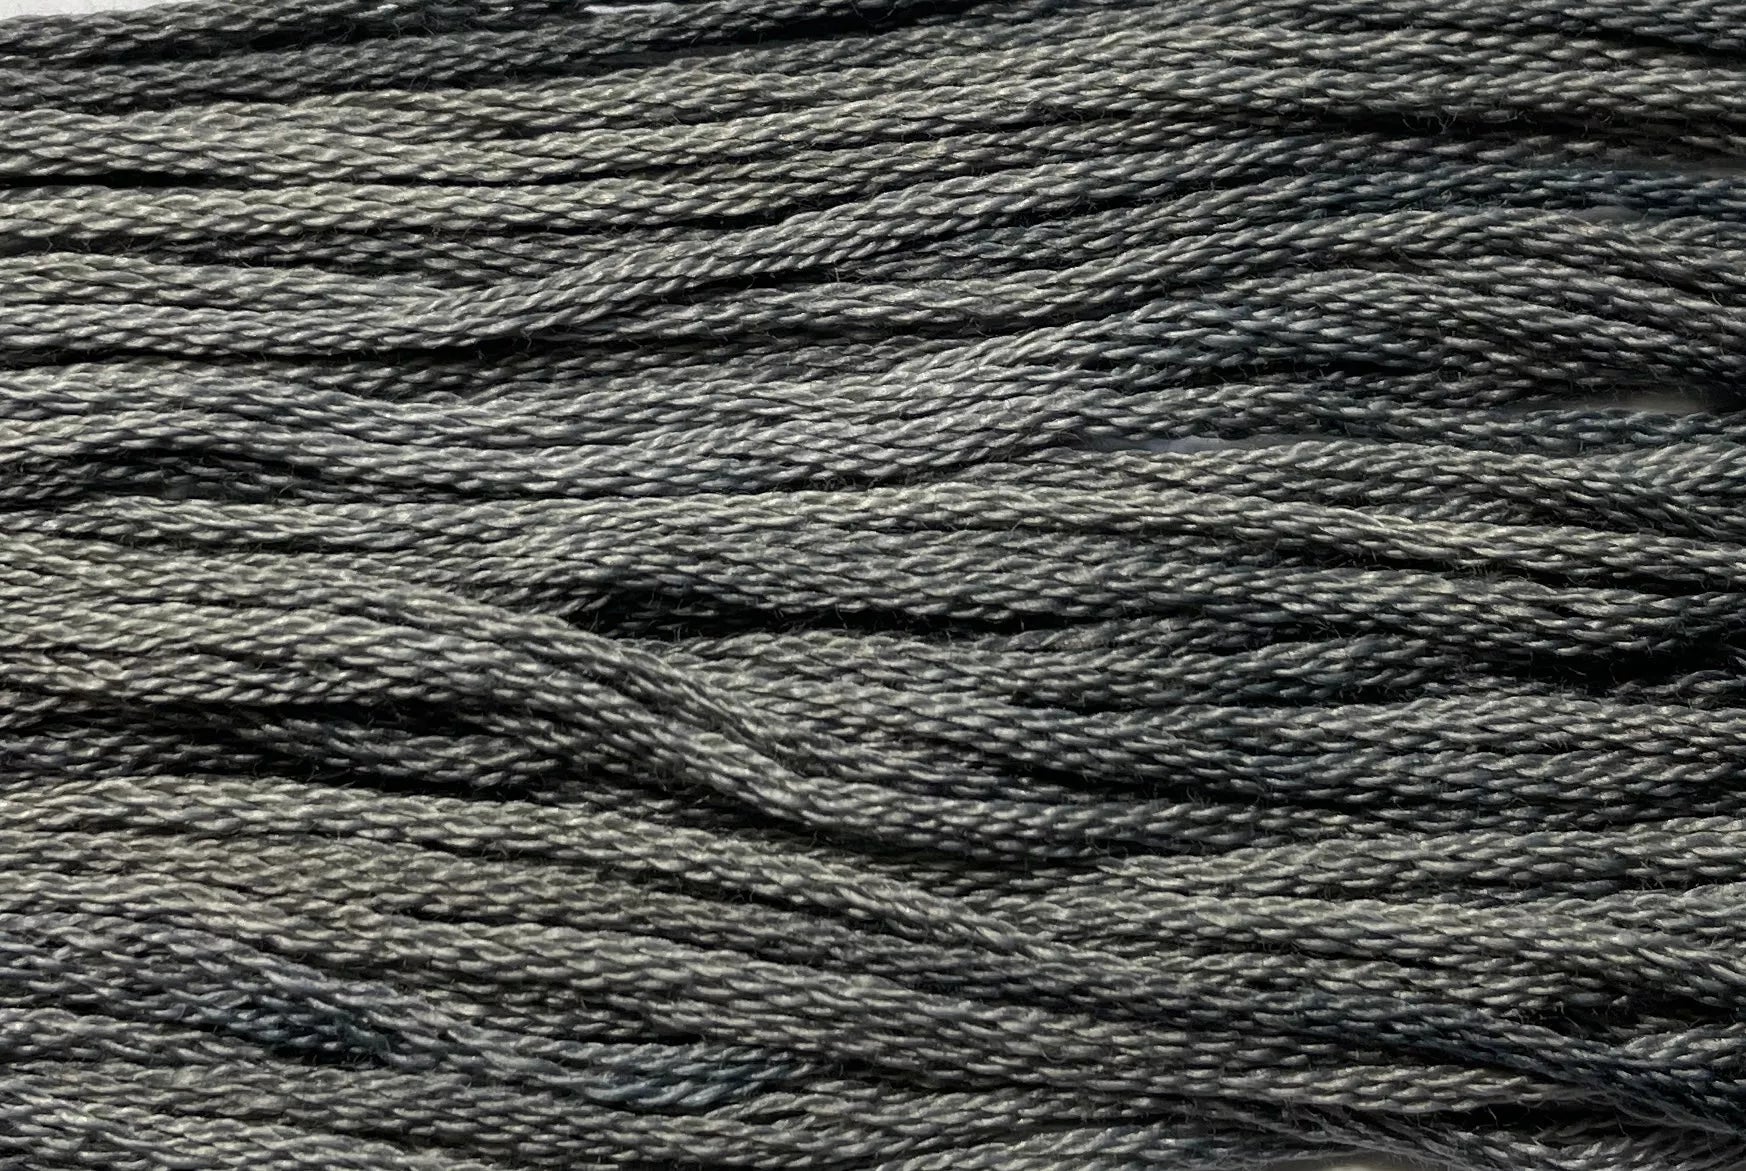 Soot - Gentle Arts Cotton Thread - 5 yard Skein - Cross Stitch Floss, Thread & Floss, Thread & Floss, The Crafty Grimalkin - A Cross Stitch Store